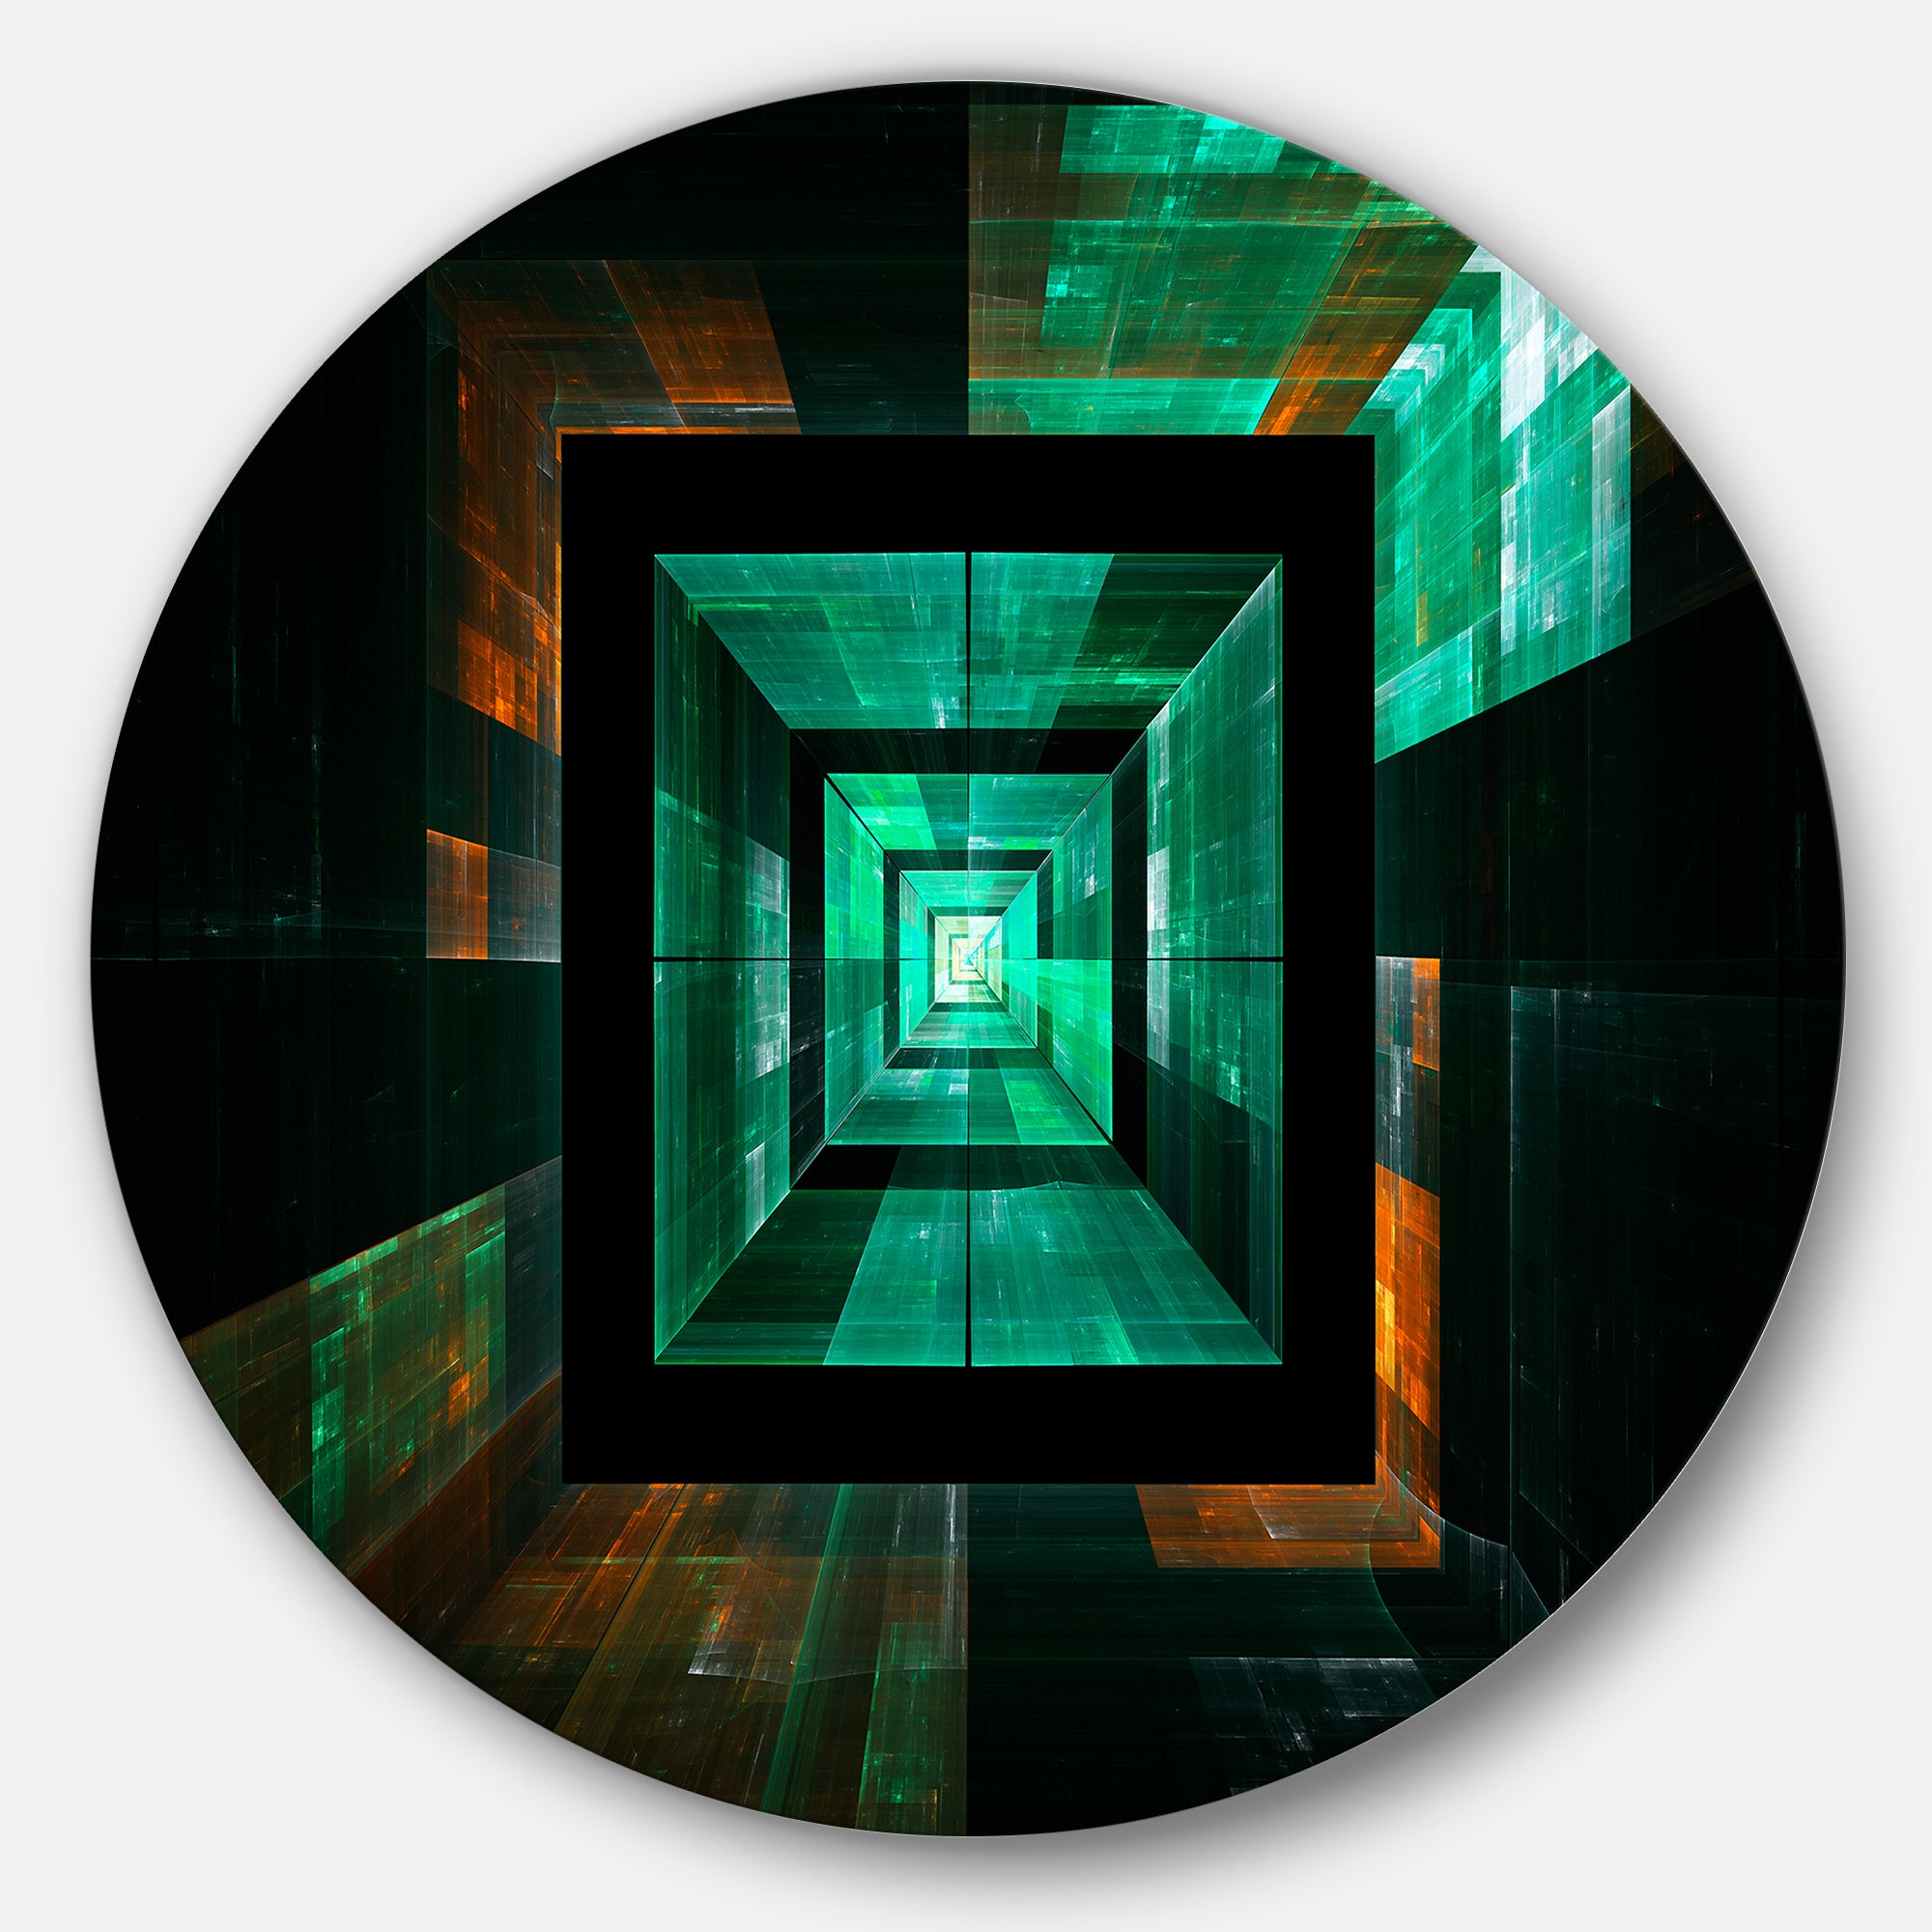 Deep Green Infinite Cube' Abstract Circle Metal Wall Art